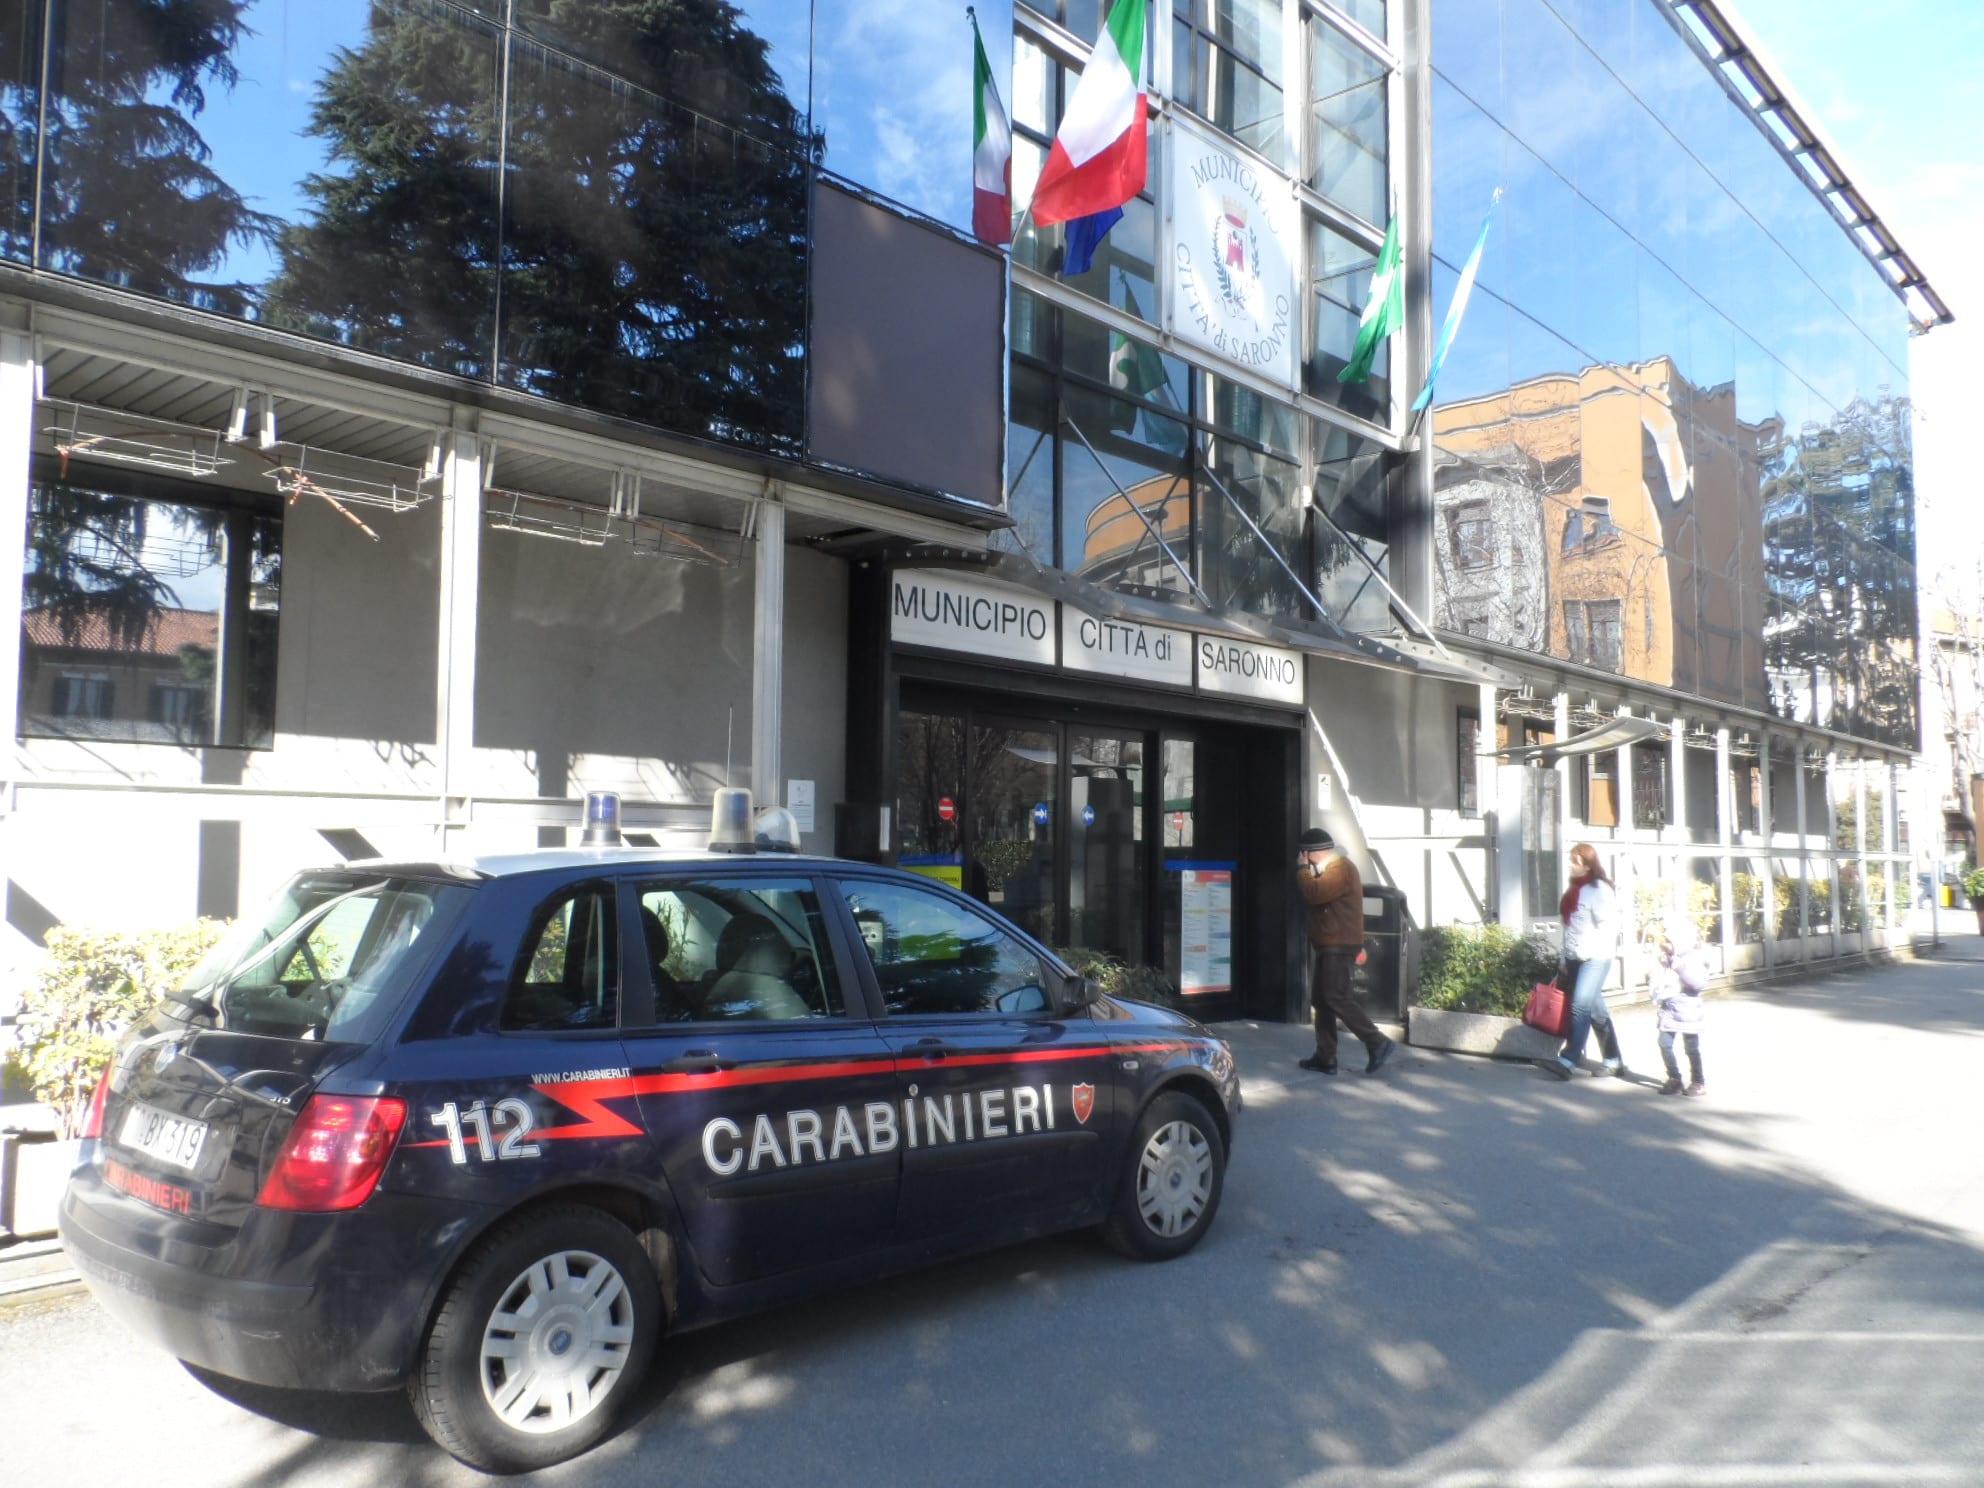 Aggressione accanto al Municipio di Saronno: giovane all’ospedale